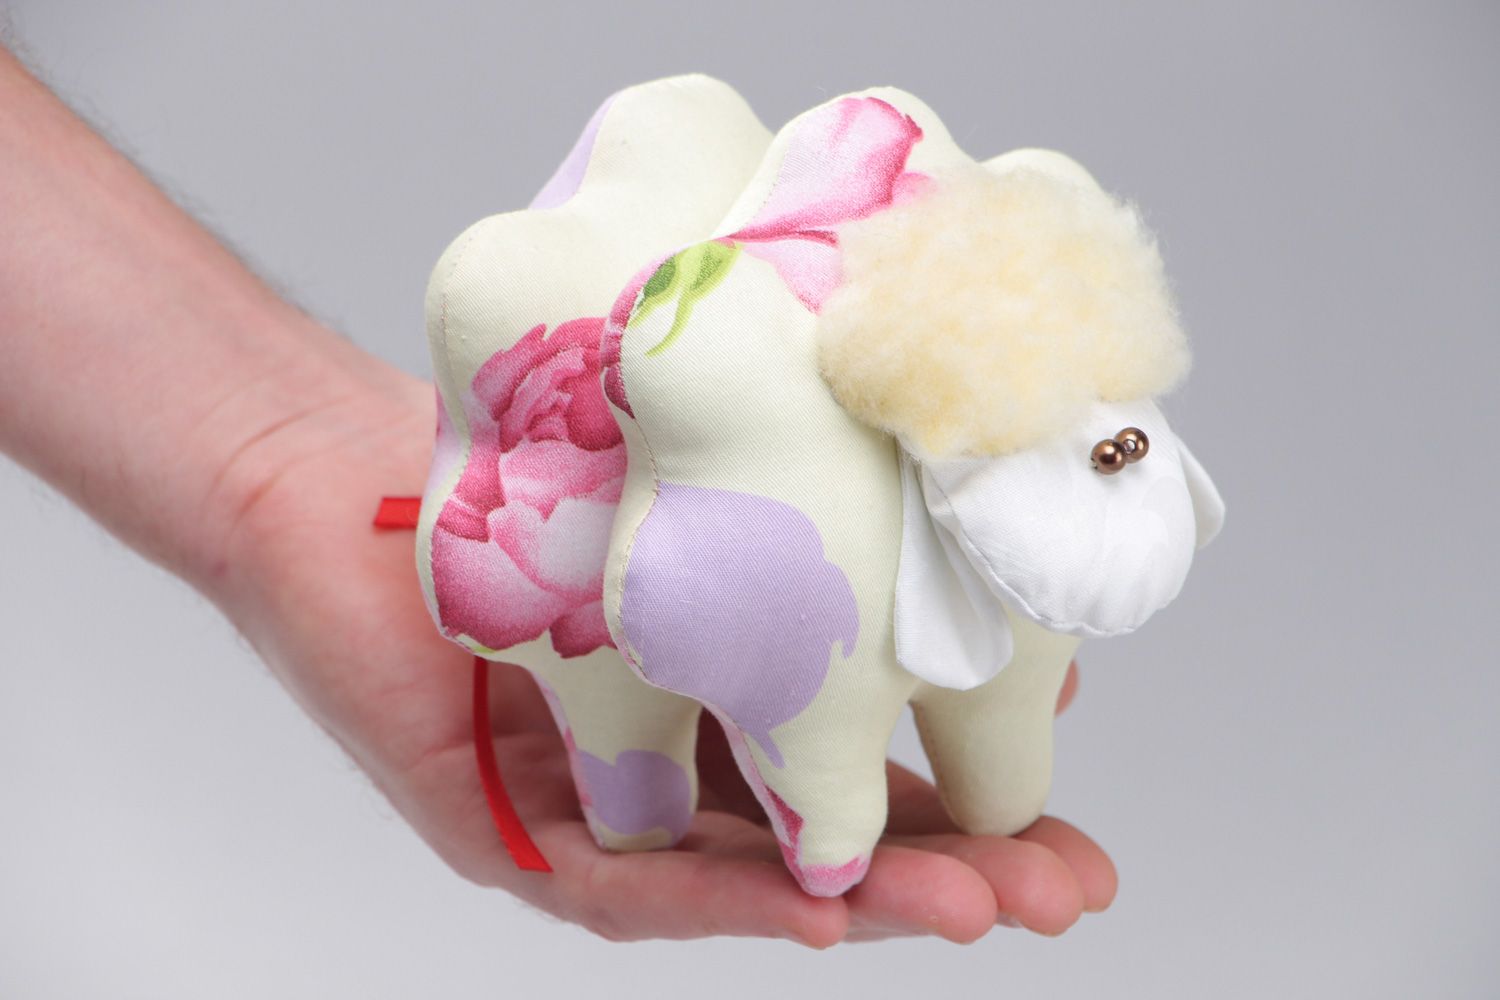 Мягкая игрушка примитив из натурального хлопка ручной работы красивая маленькая овечка фото 4